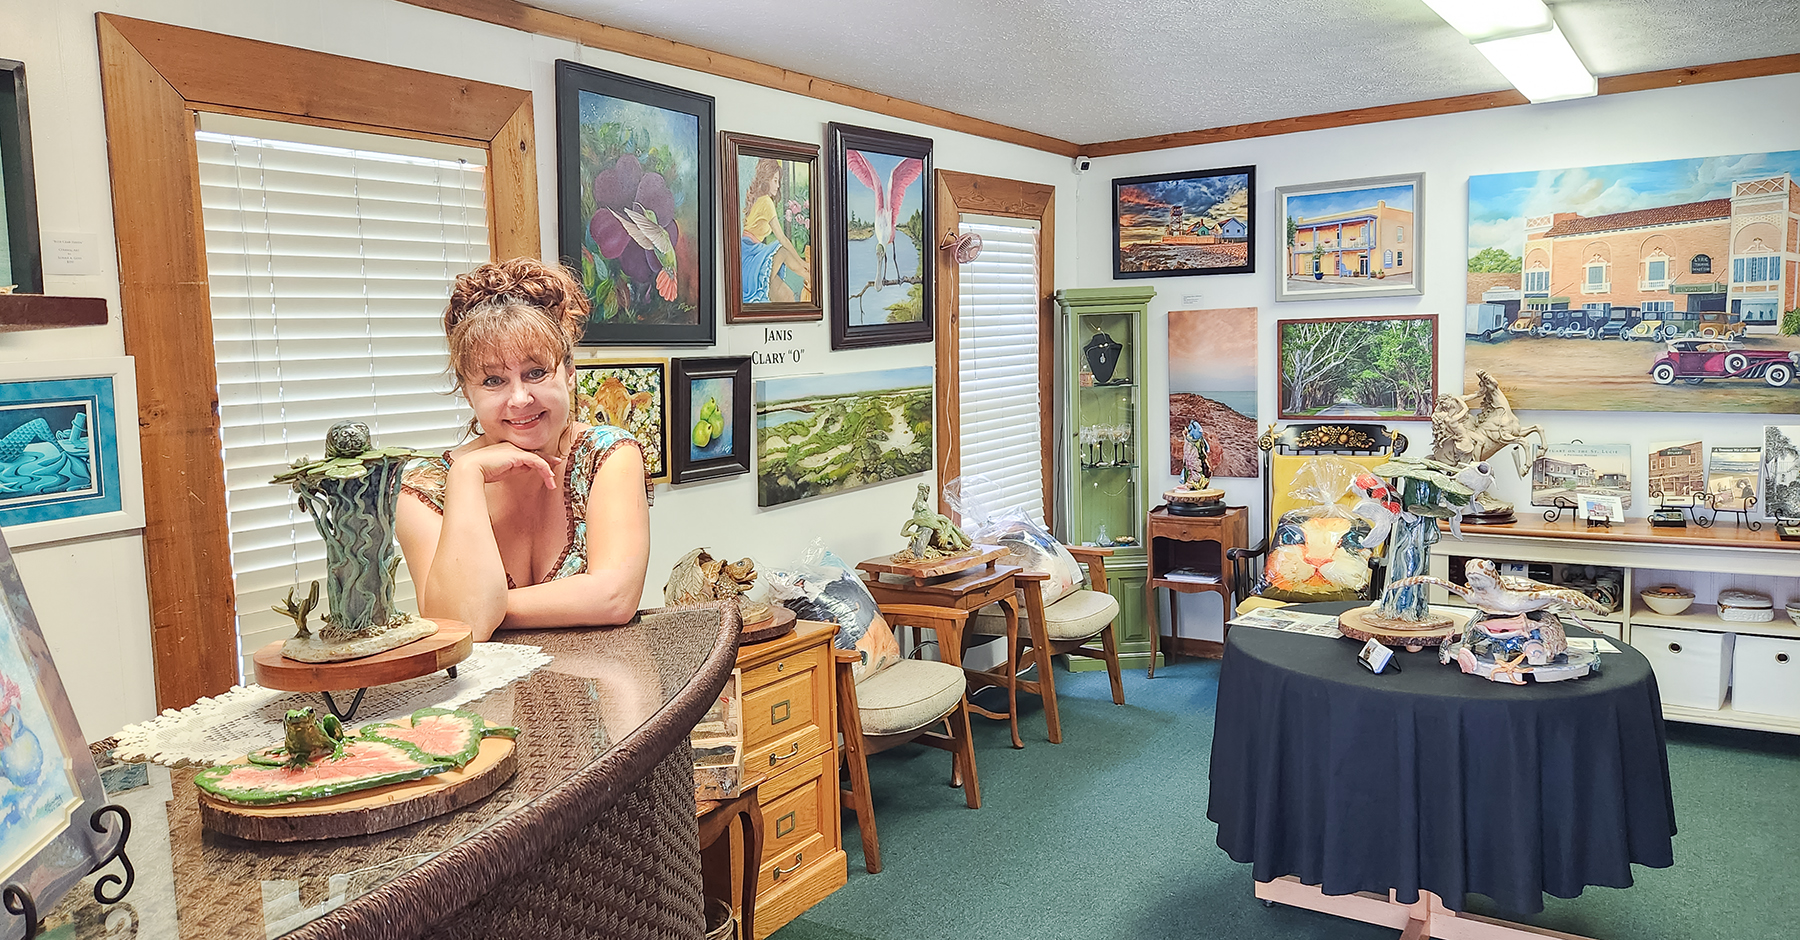 Olga Hamilton Fine Art Studio. Art for sale in Stuart, Martin County, Florida. MartinArts. Discover Martin County. The Creek District.